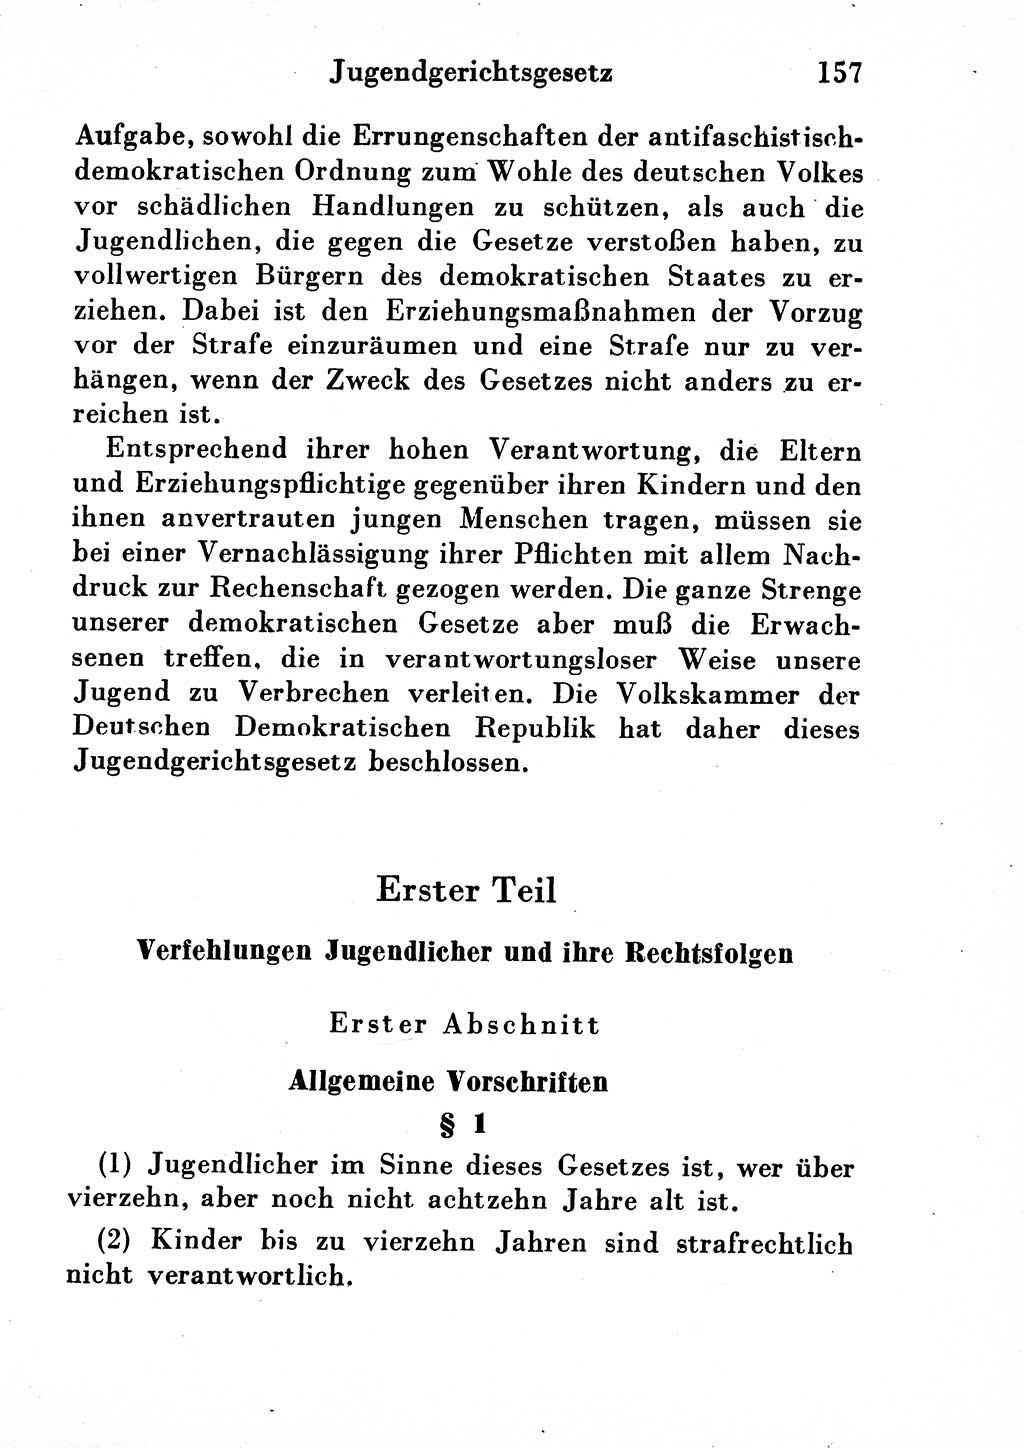 Strafgesetzbuch (StGB) und andere Strafgesetze [Deutsche Demokratische Republik (DDR)] 1954, Seite 157 (StGB Strafges. DDR 1954, S. 157)